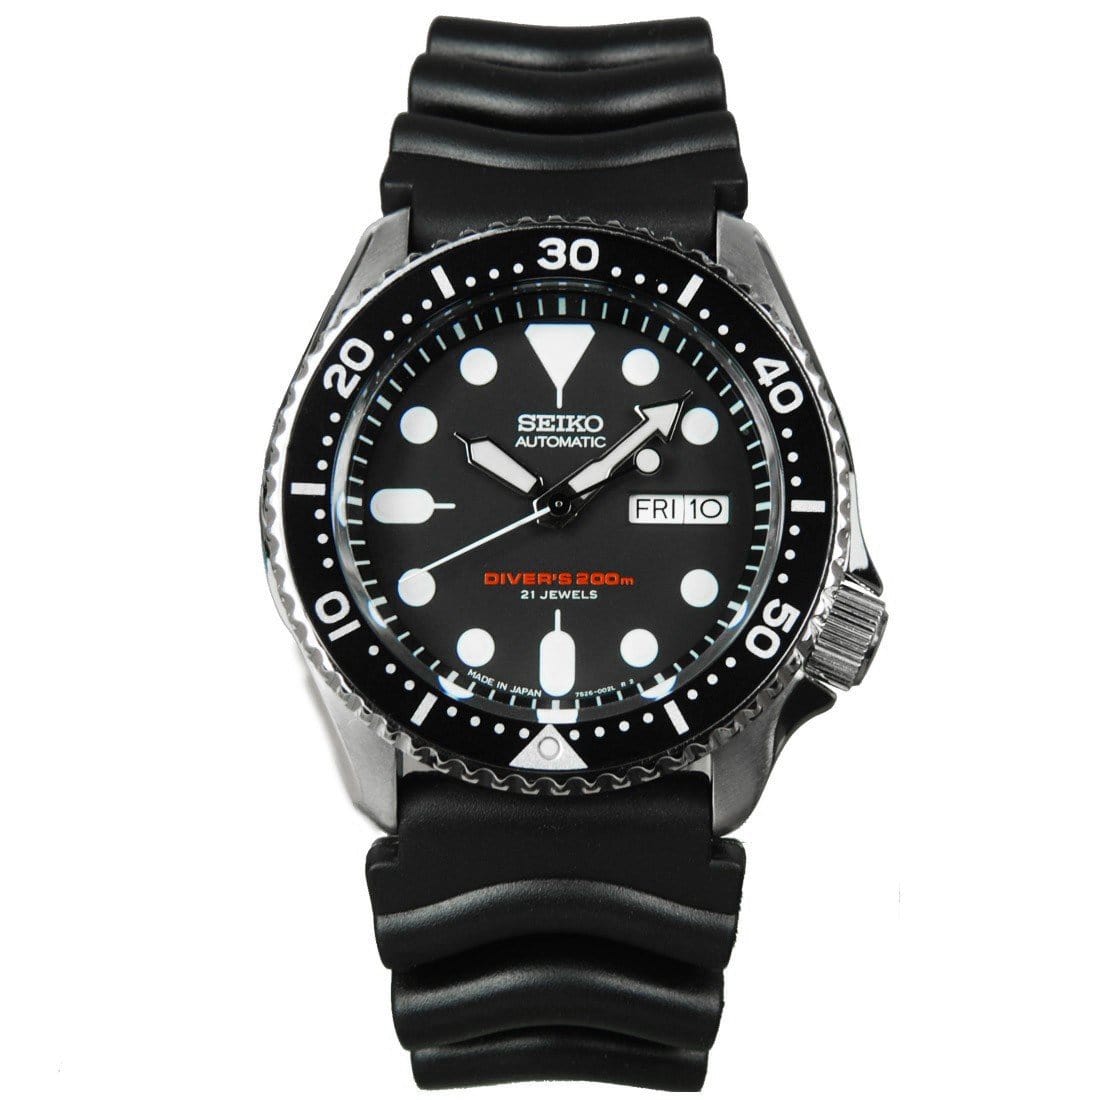 Seiko Mechanical Japan Watch SKX007 SKX007J1 with Leather Bracelet